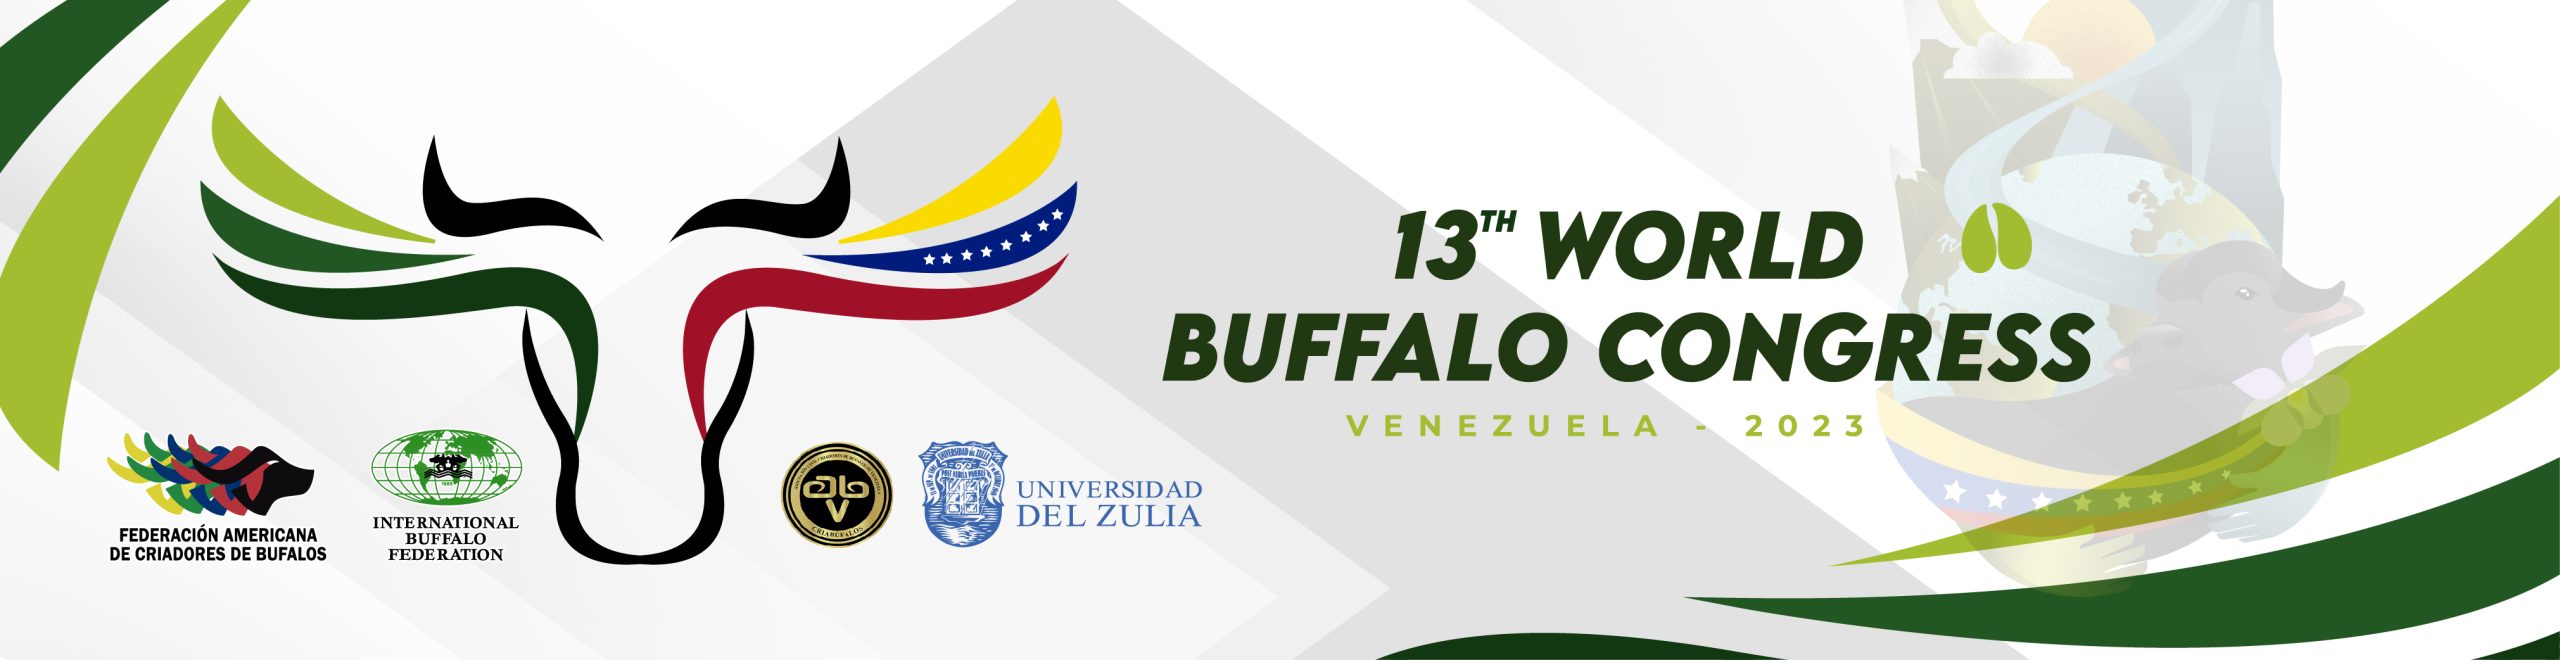 13th world buffalo congress